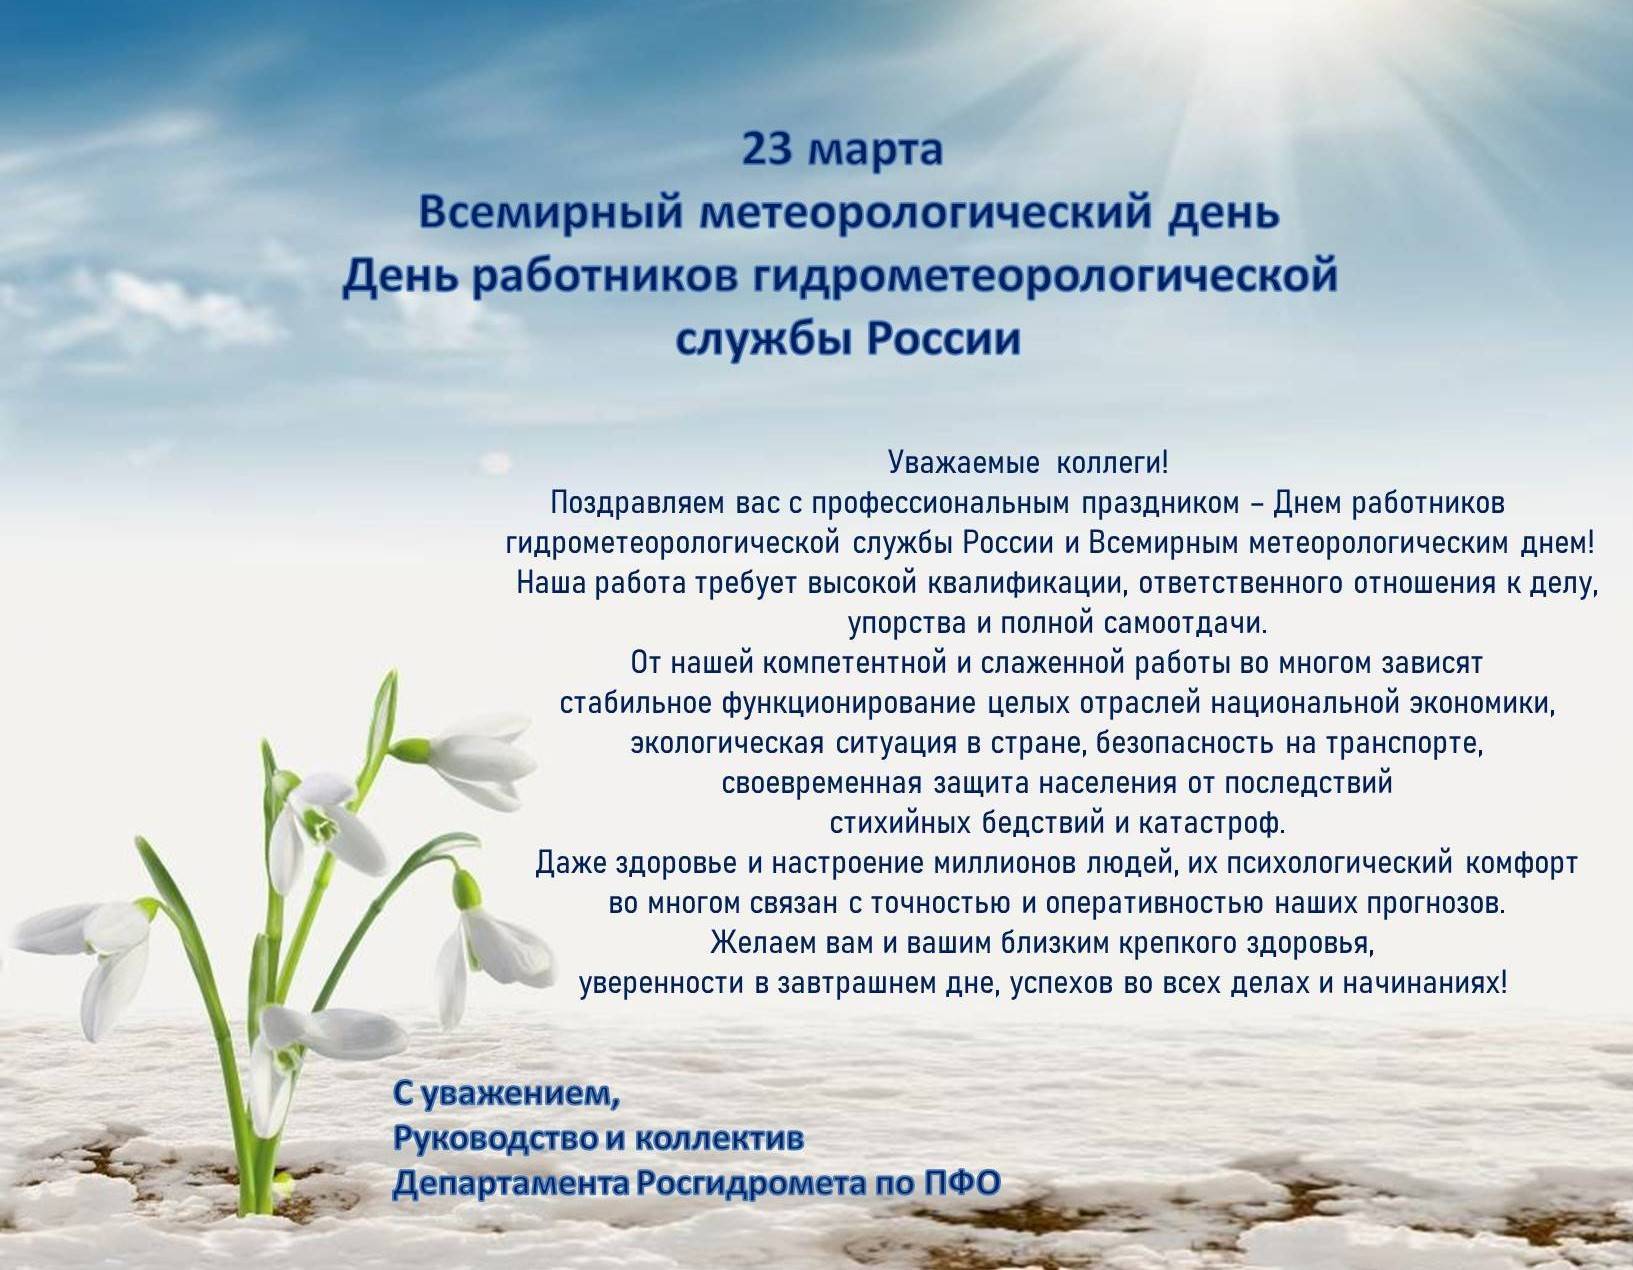 Всемирный день метеорологии отмечается 23 марта - "слово без границ" - новости россии и мира сегодня